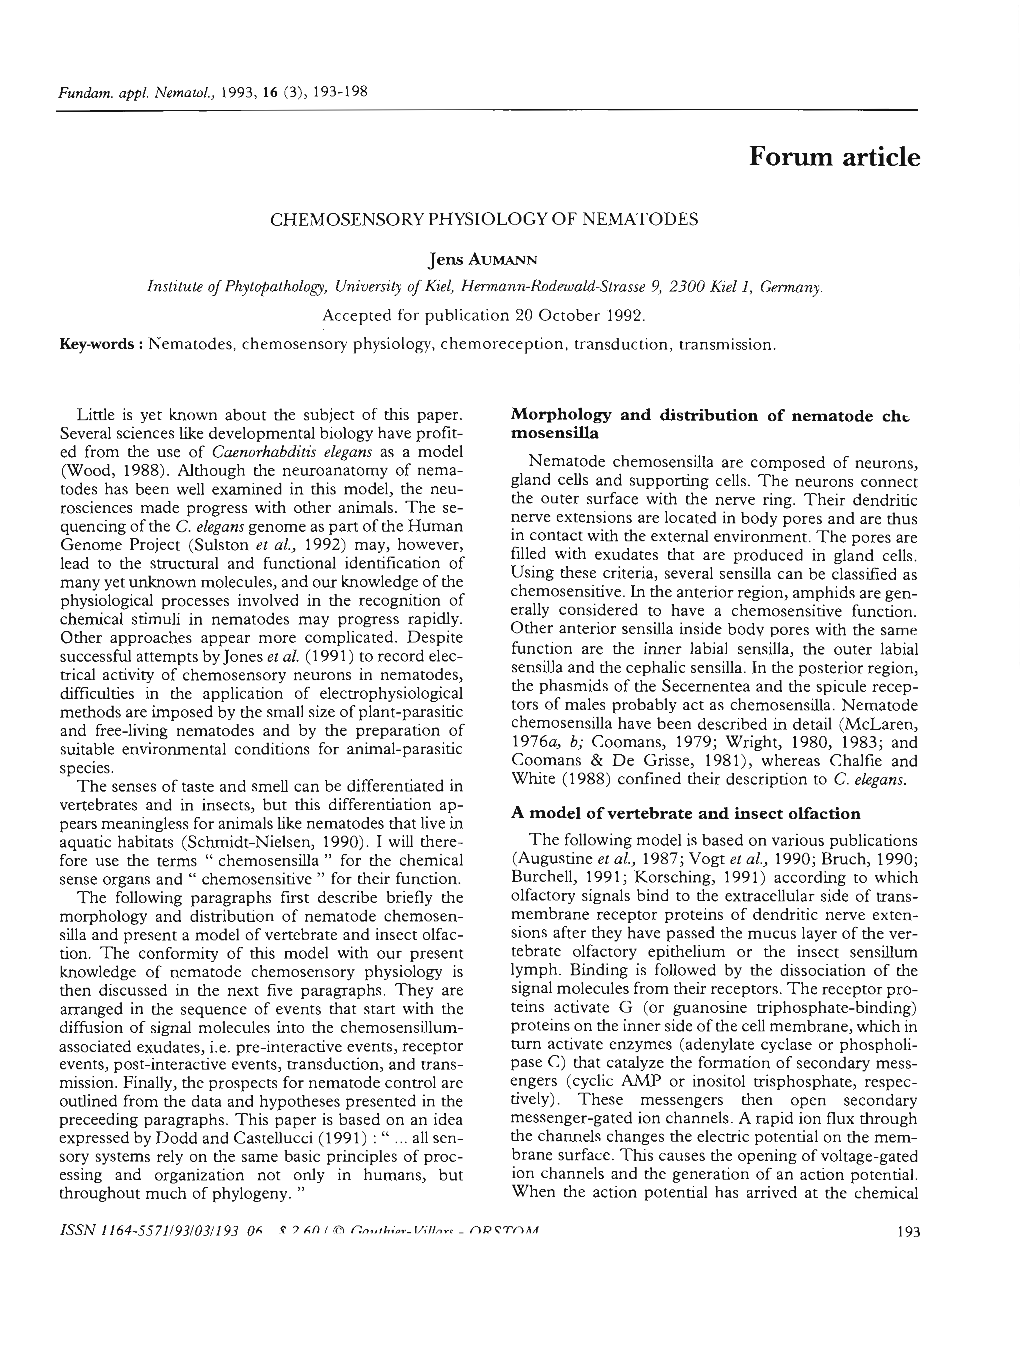 Chemosensory Physiology of Nematodes